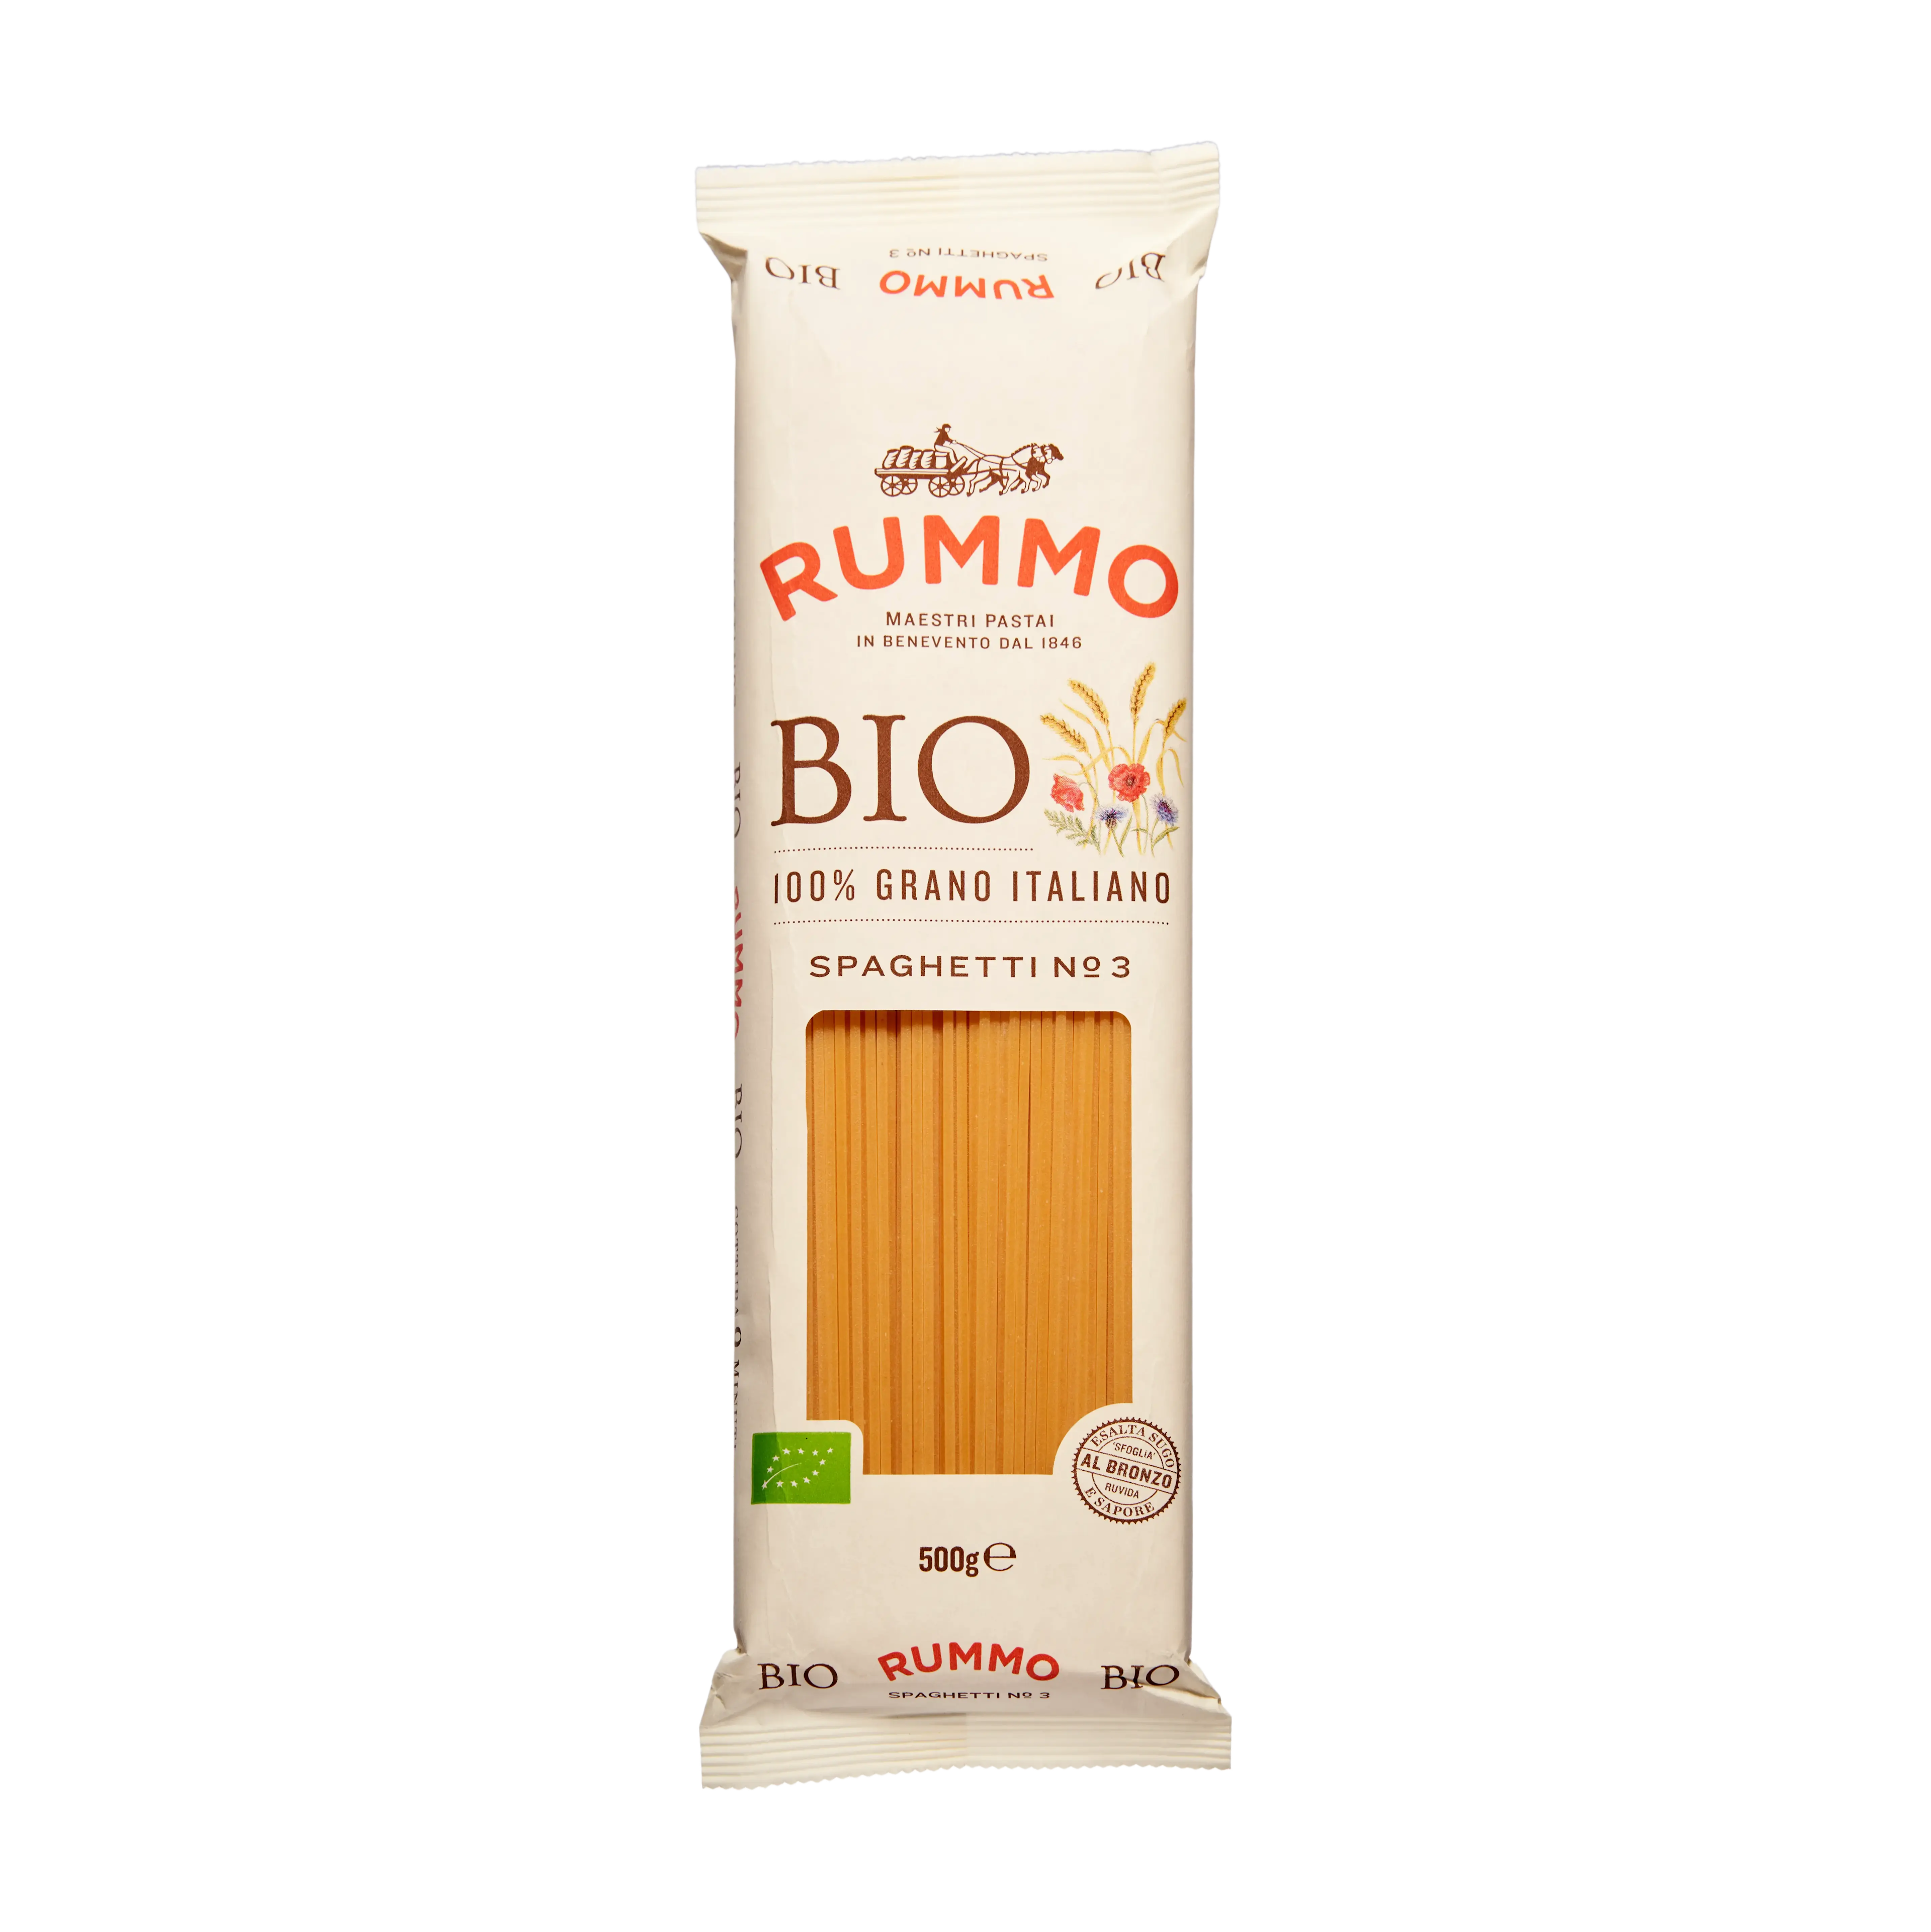 Rummo Spaghetti No 3 Bio 1 (1)